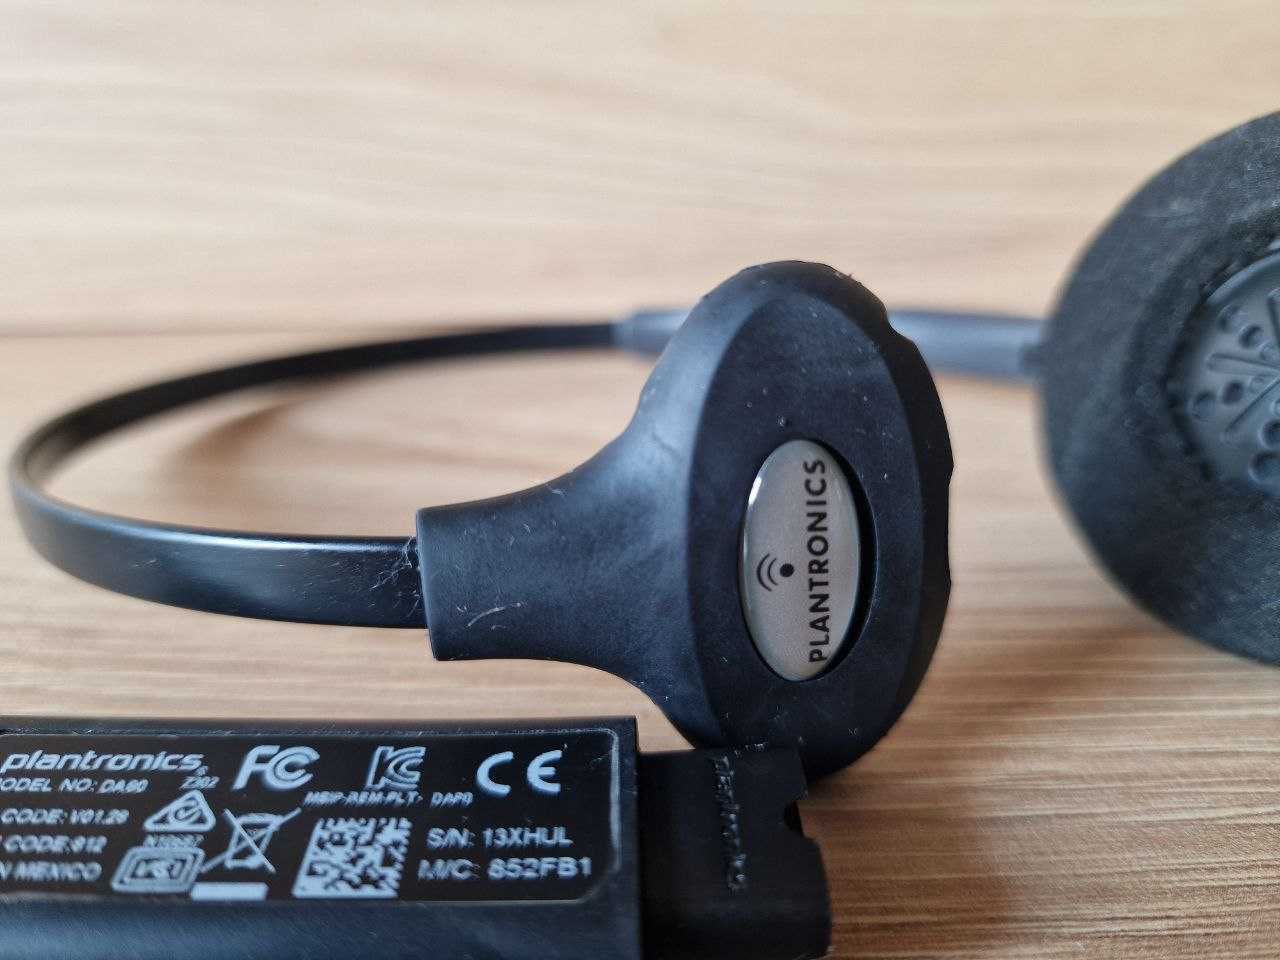 Słuchawki Plantronics HW251 N/A z kablem przyłączeniowym USB